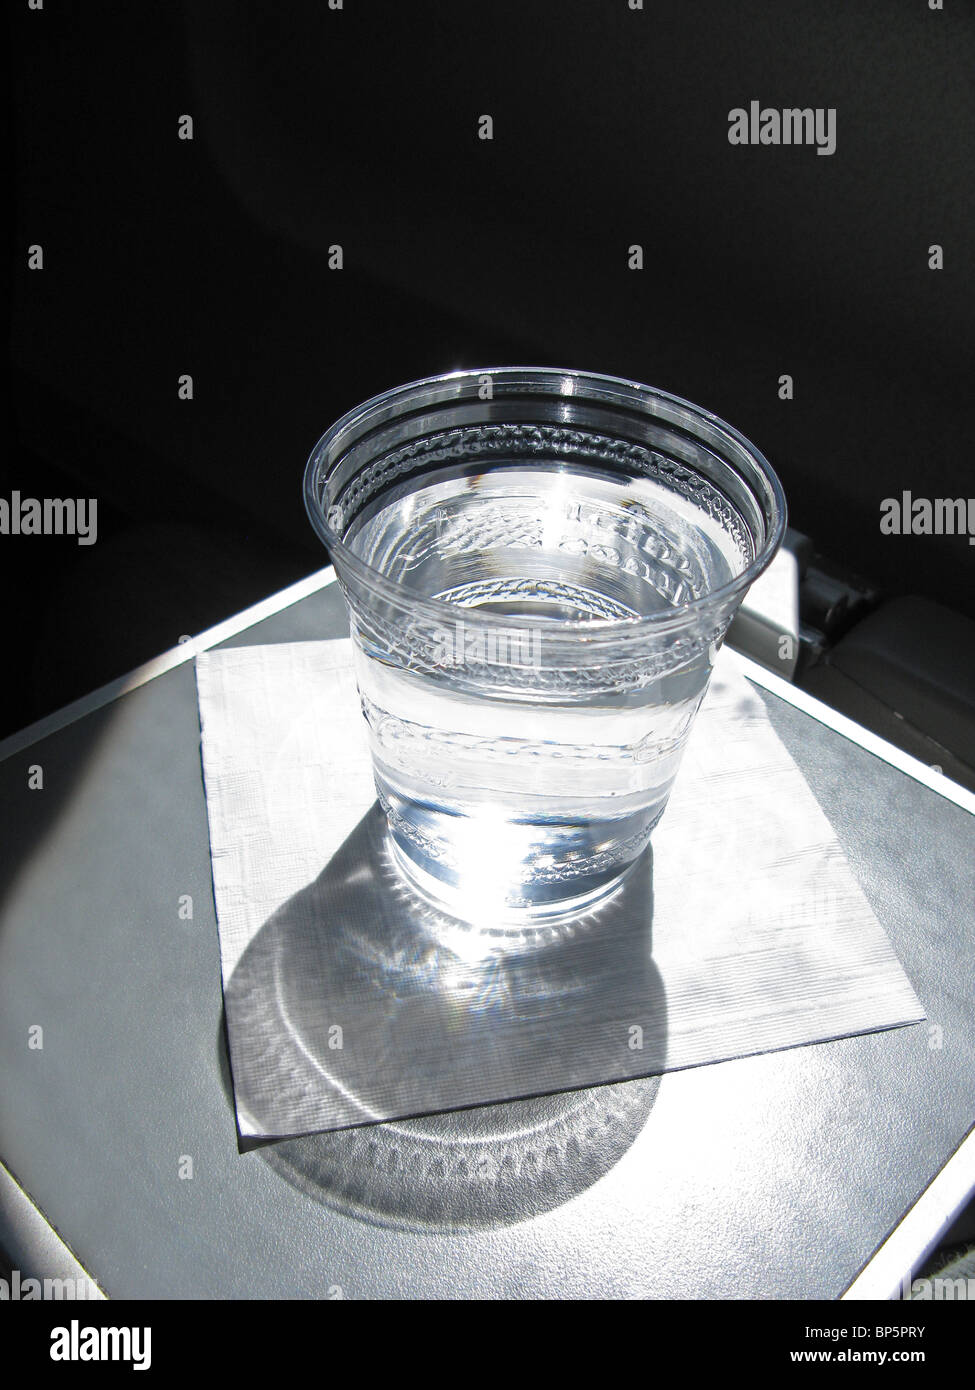 Une tasse en plastique rempli d'eau sur une serviette blanche sur un avion du conducteur bac avec une forte lumière de la fenêtre. Banque D'Images